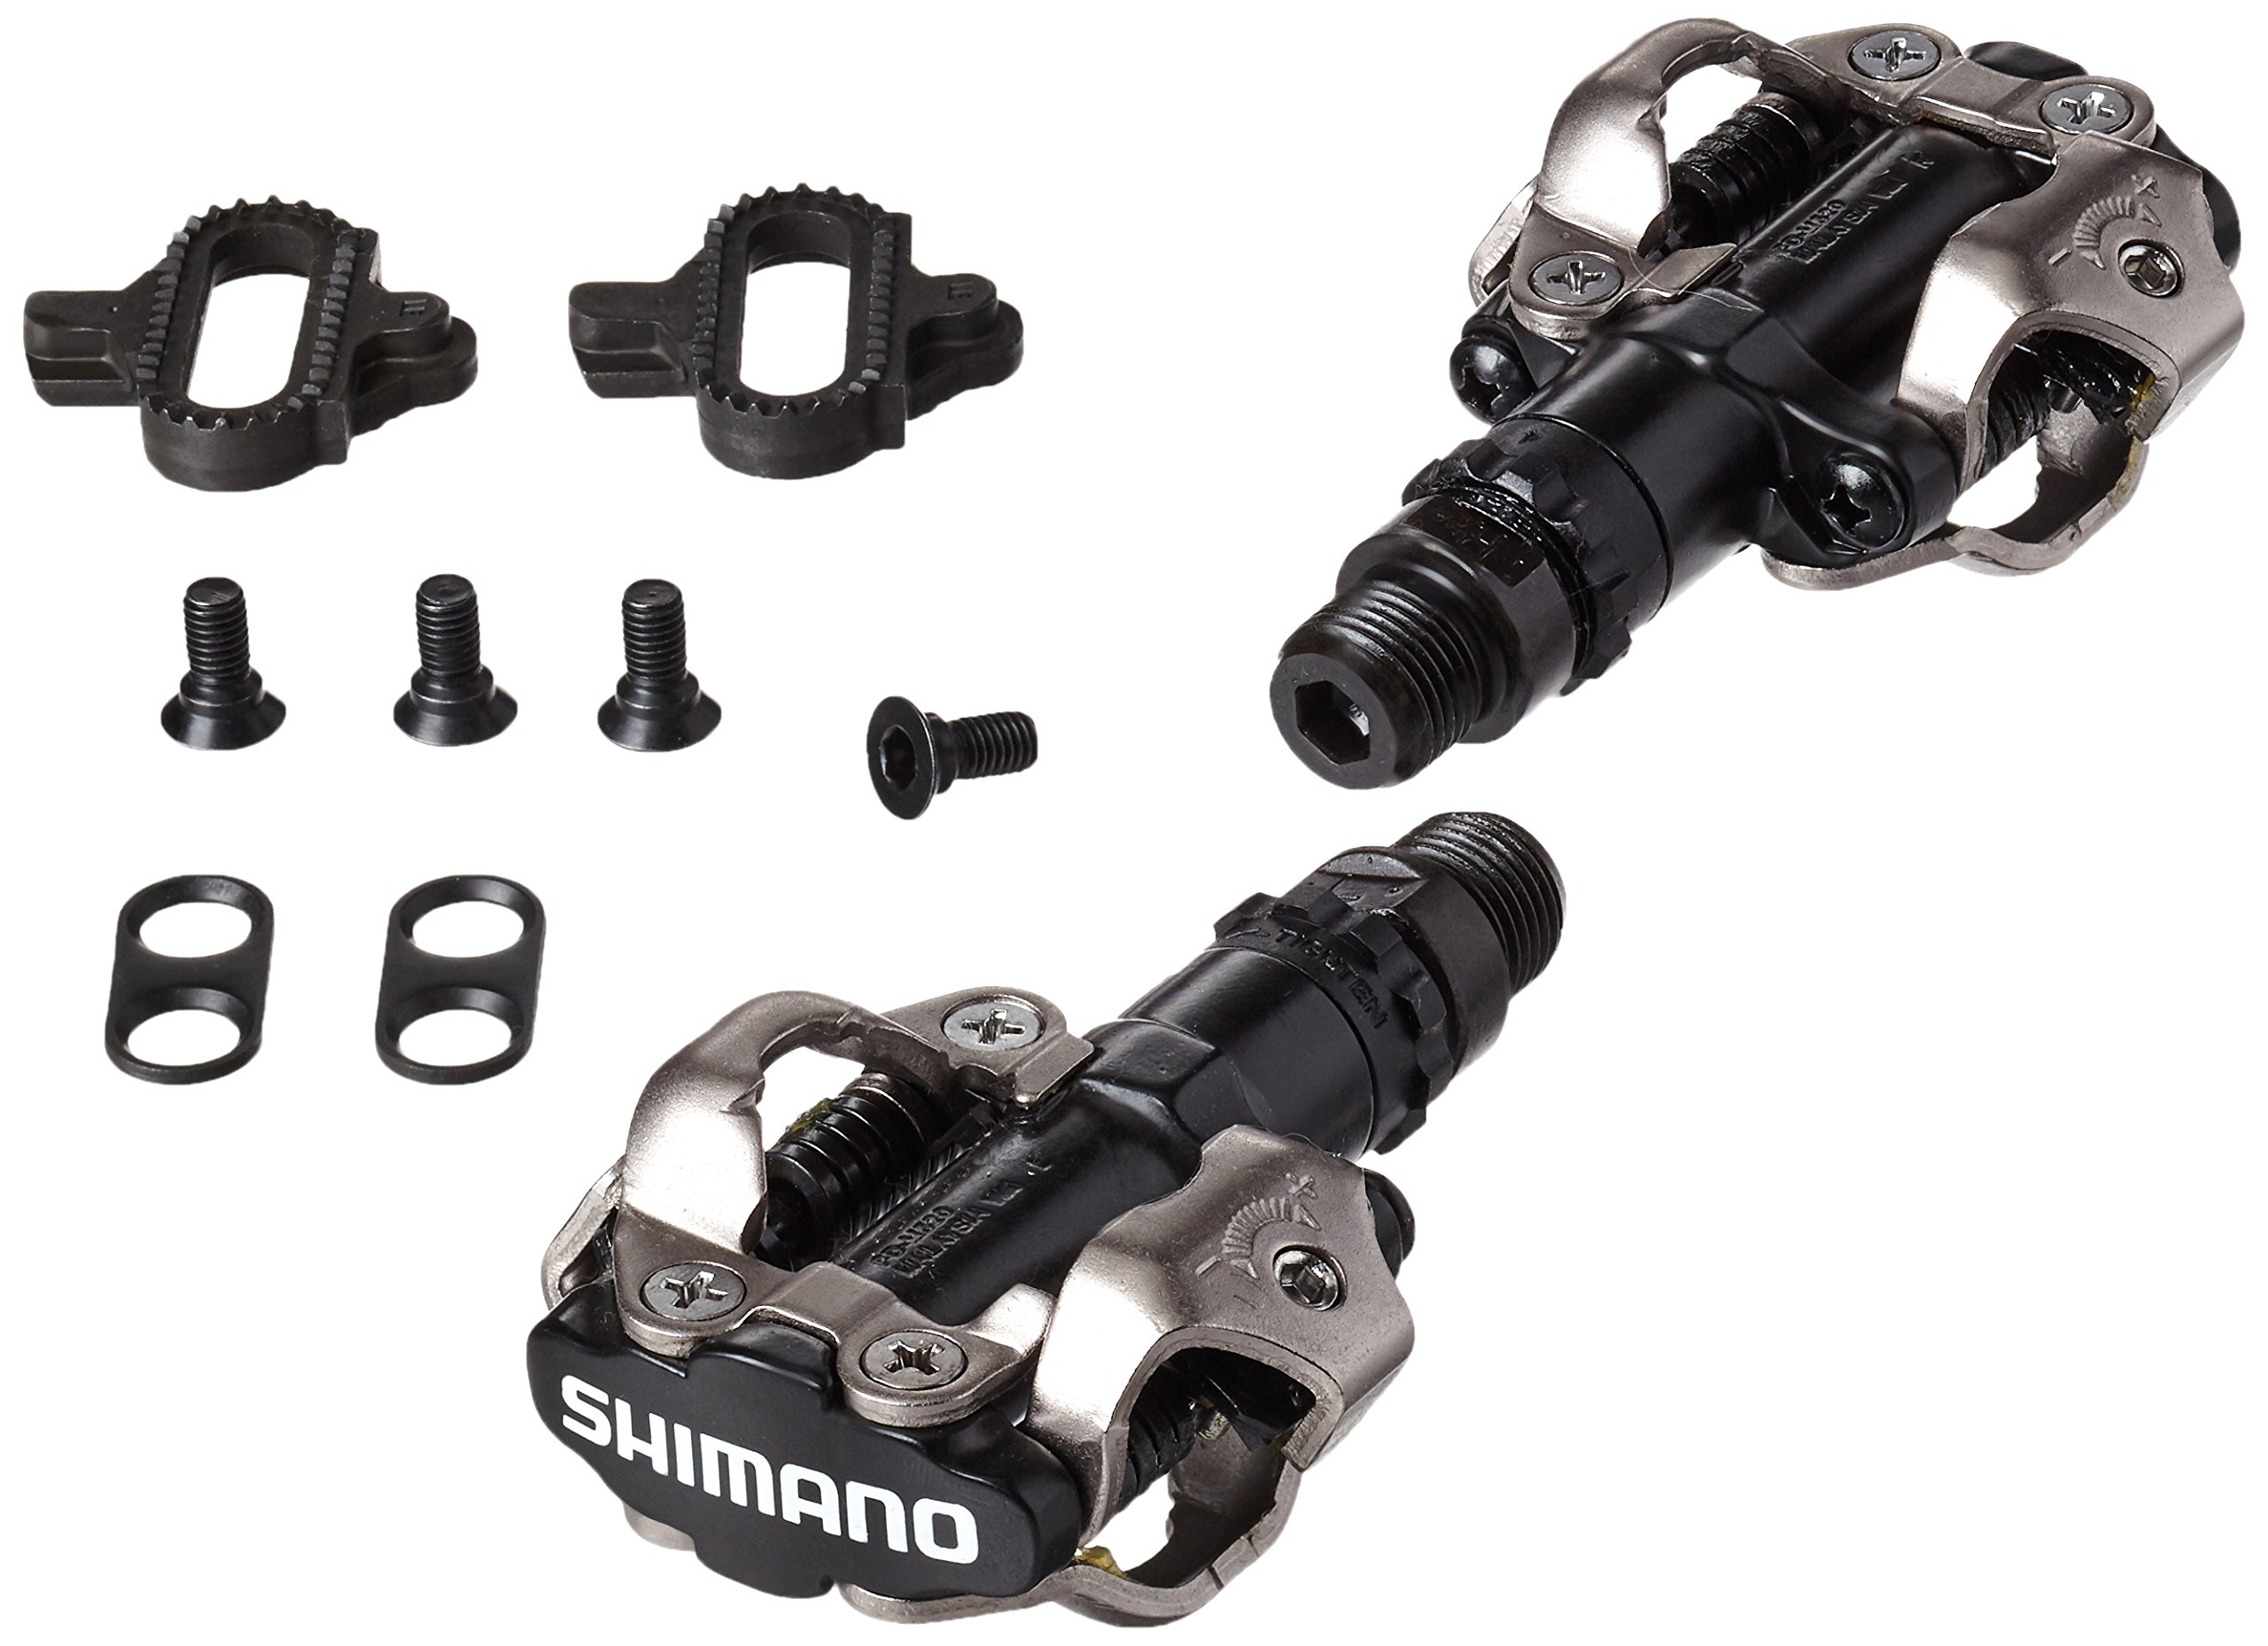 hebben zich vergist Hoofd Sluiting Buy Shimano Unisex PD-M520 MTB SPD Pedal (Black) Online | eRomman